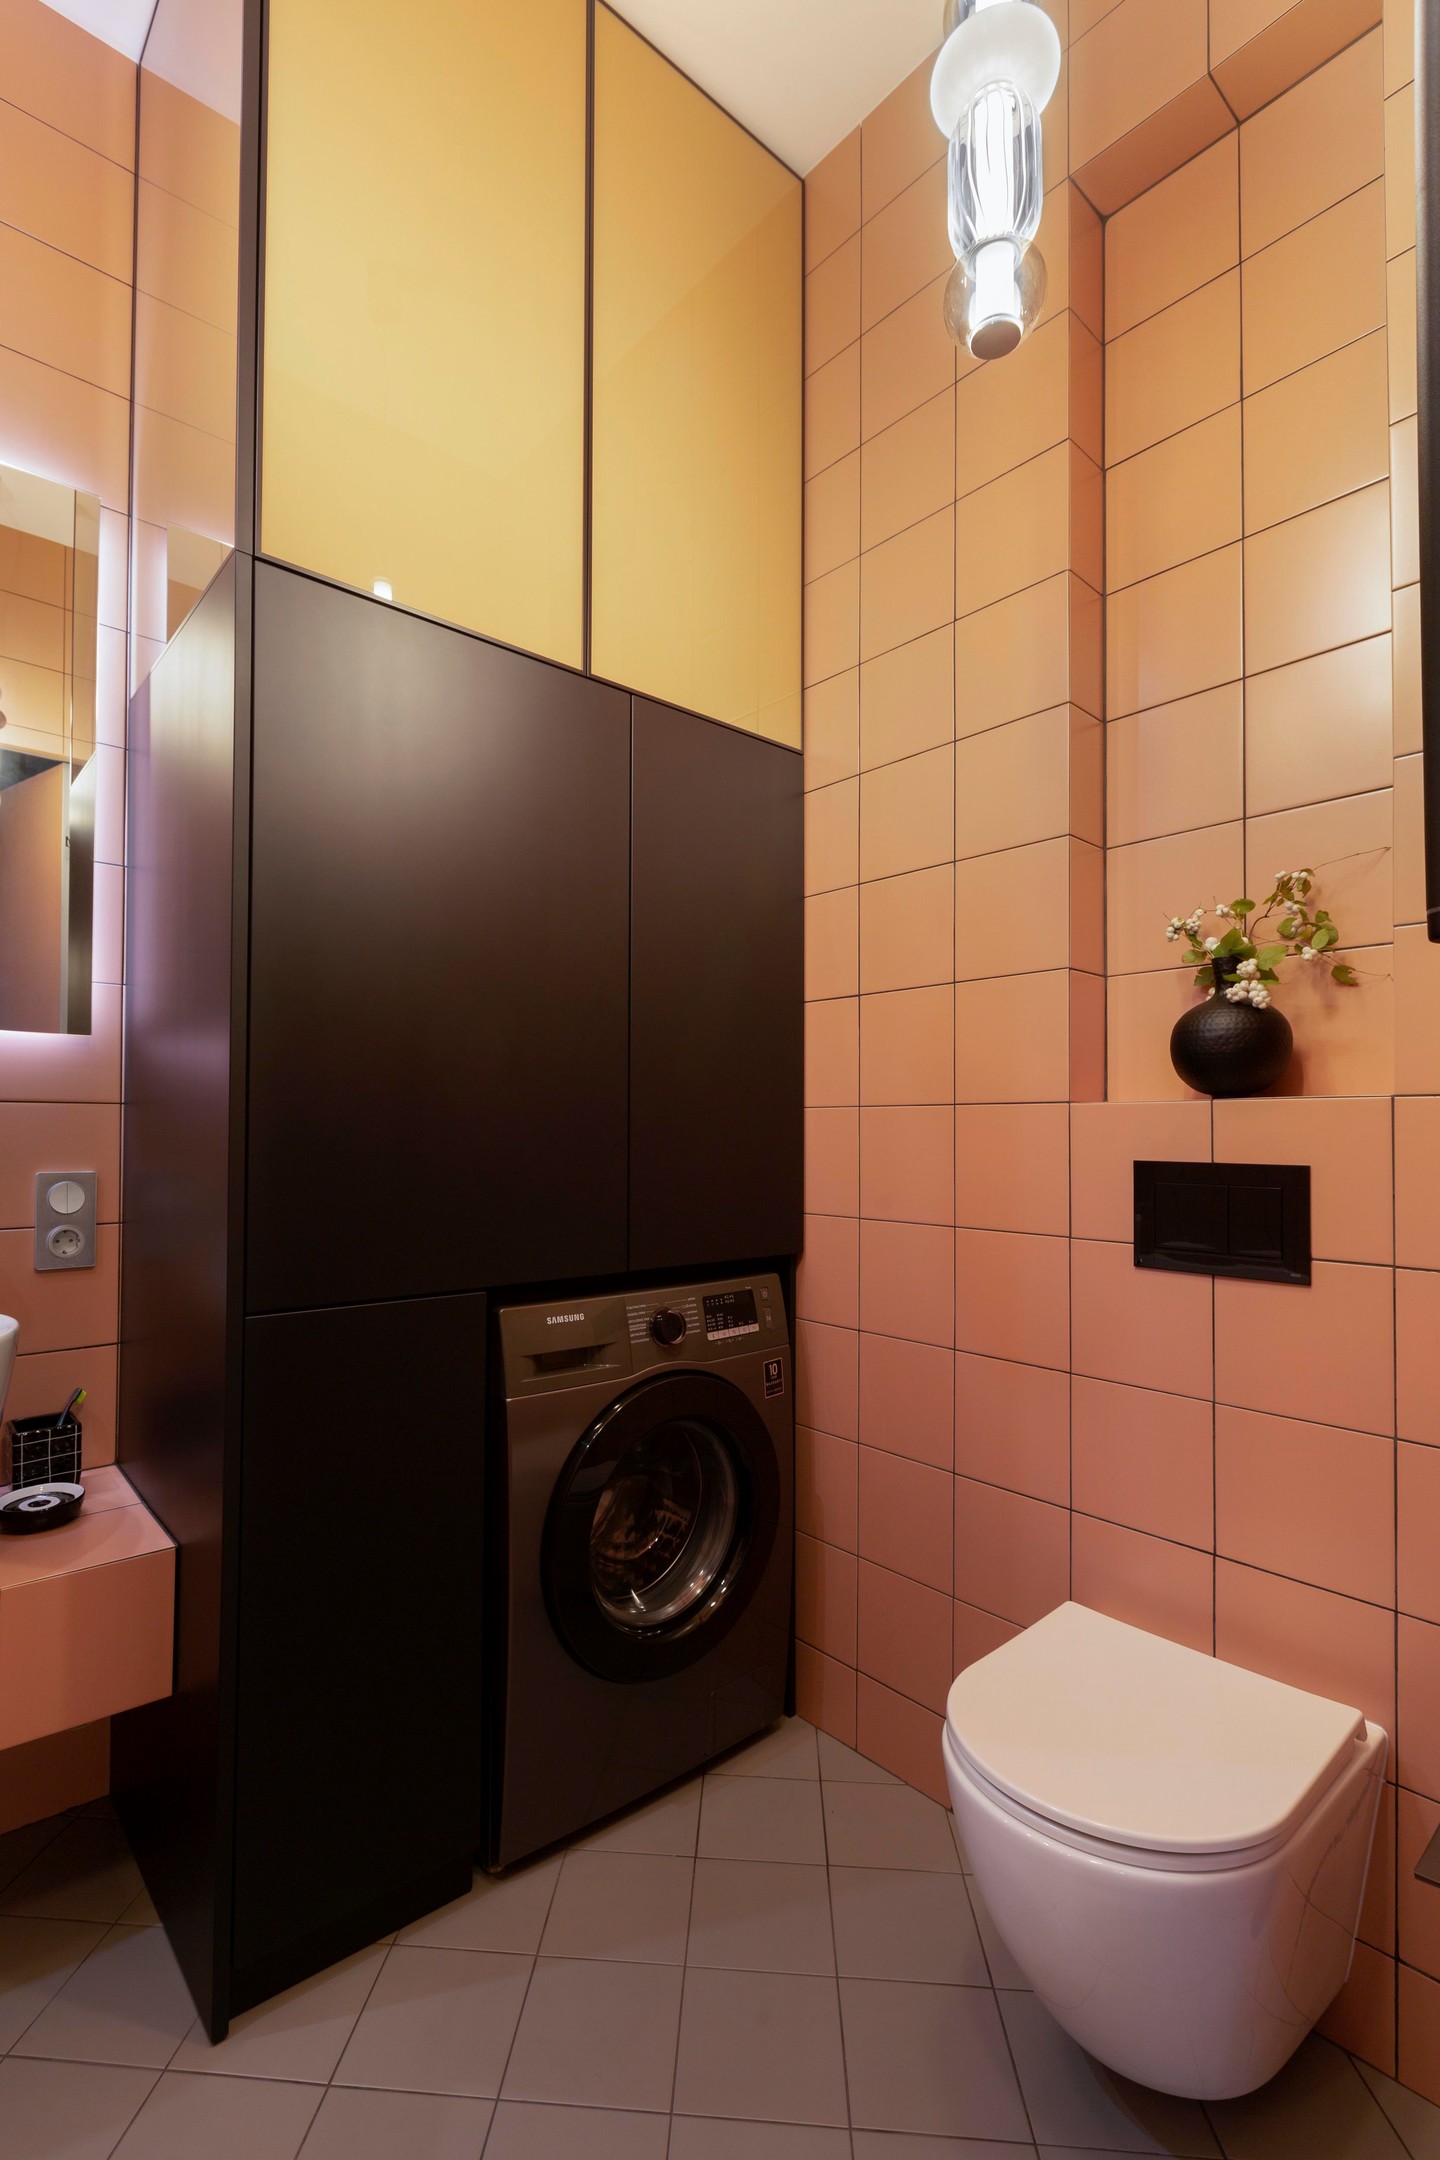 Có thể nói, mỗi khu vực chức năng trong căn hộ đều mang một màu sắc nổi bật để tạo sự khác biệt. Phòng tắm chọn gạch ốp tường màu gạch đất nung ấm áp, toilet gắn tường hiện đại, góc tường là tủ lưu trữ tích hợp không gian cho máy giặt.